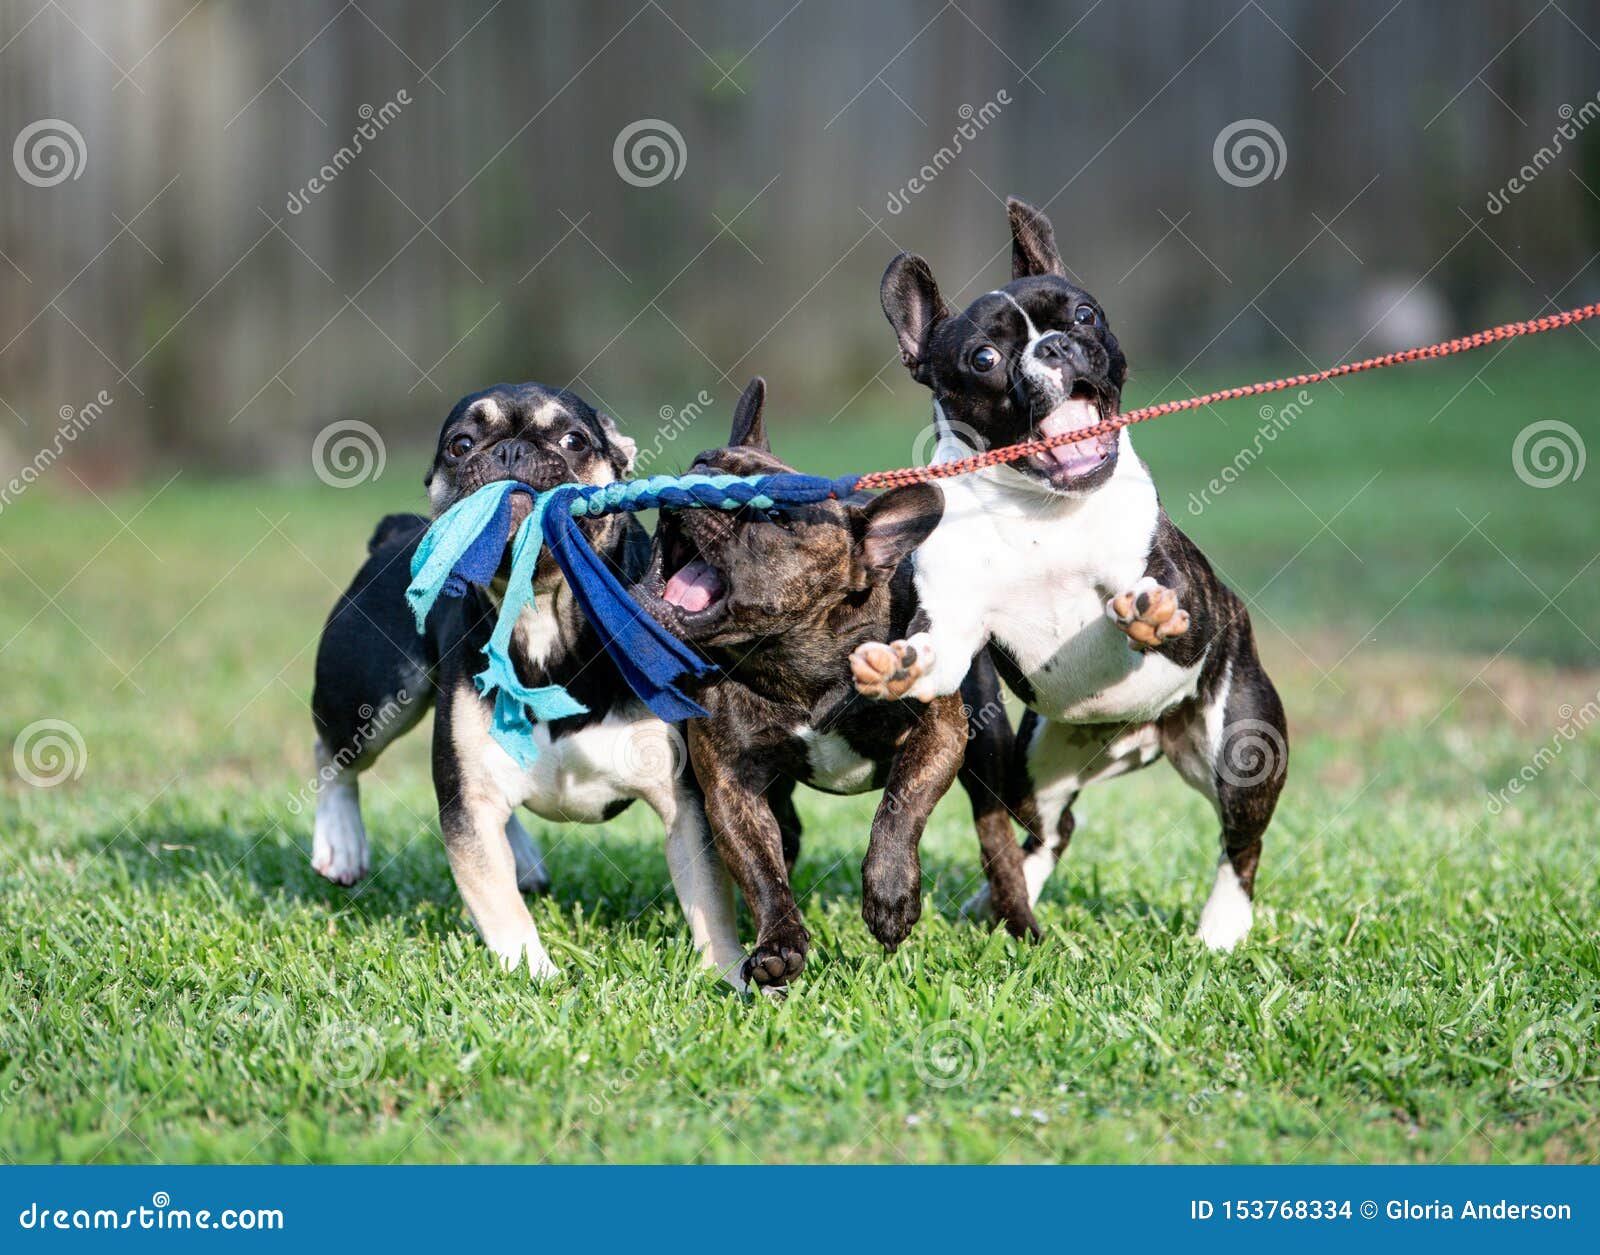 Tre bulldog francesi che giocano con un palo del flirt. 3 bulldog francesi che giocano con una linea del palo del flirt nell'erba